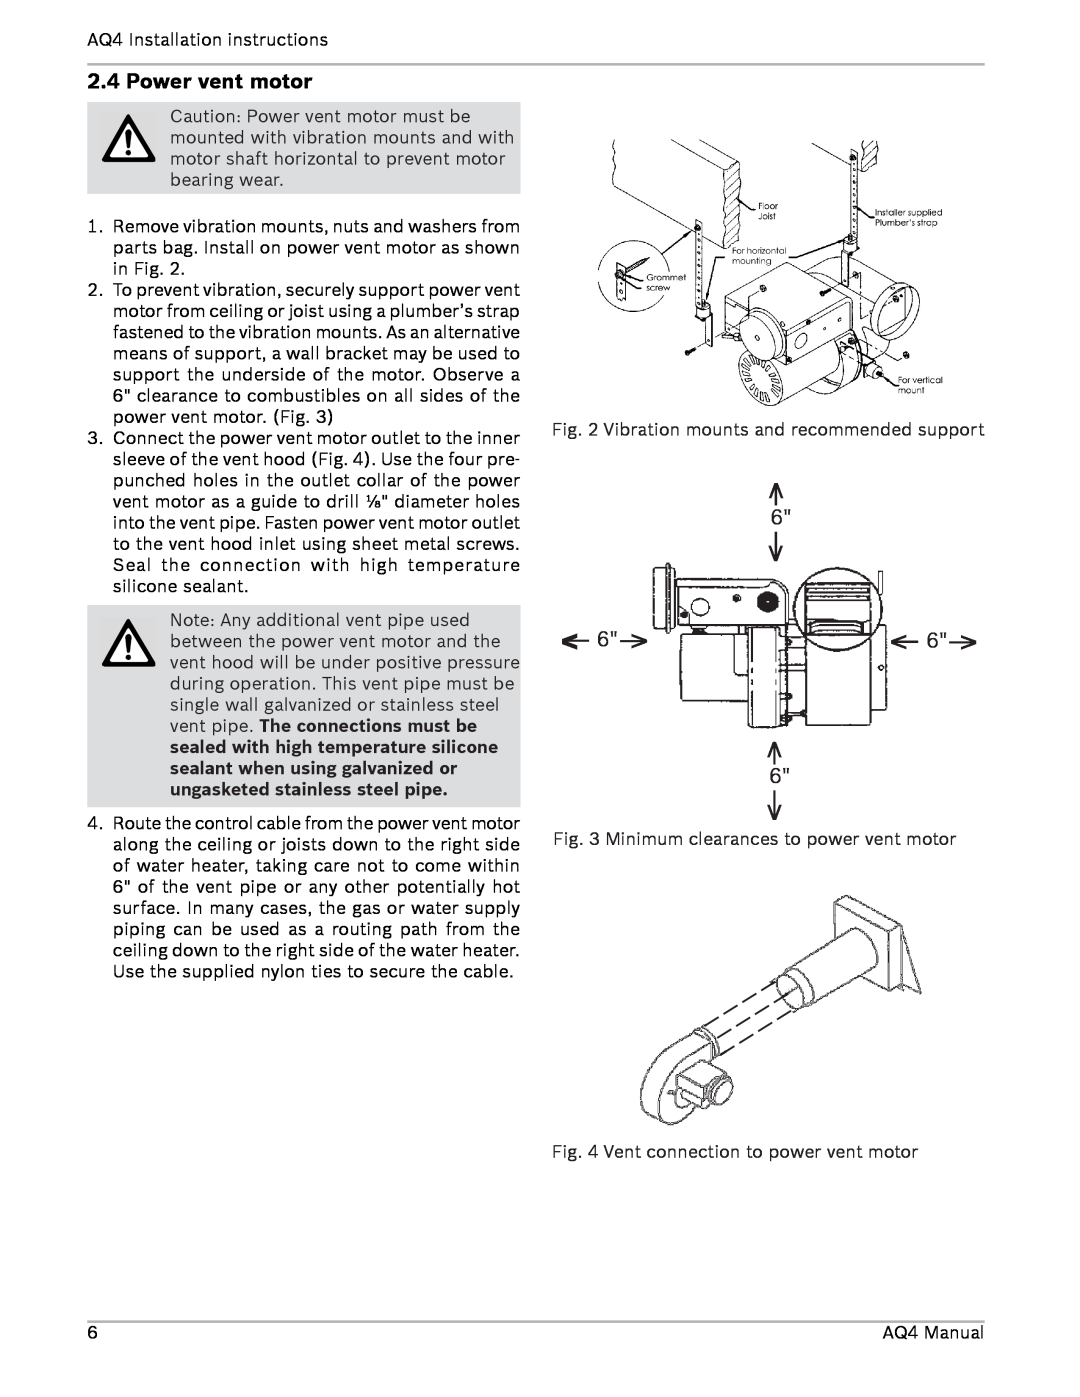 AquaStar AQ4 installation manual Power vent motor 